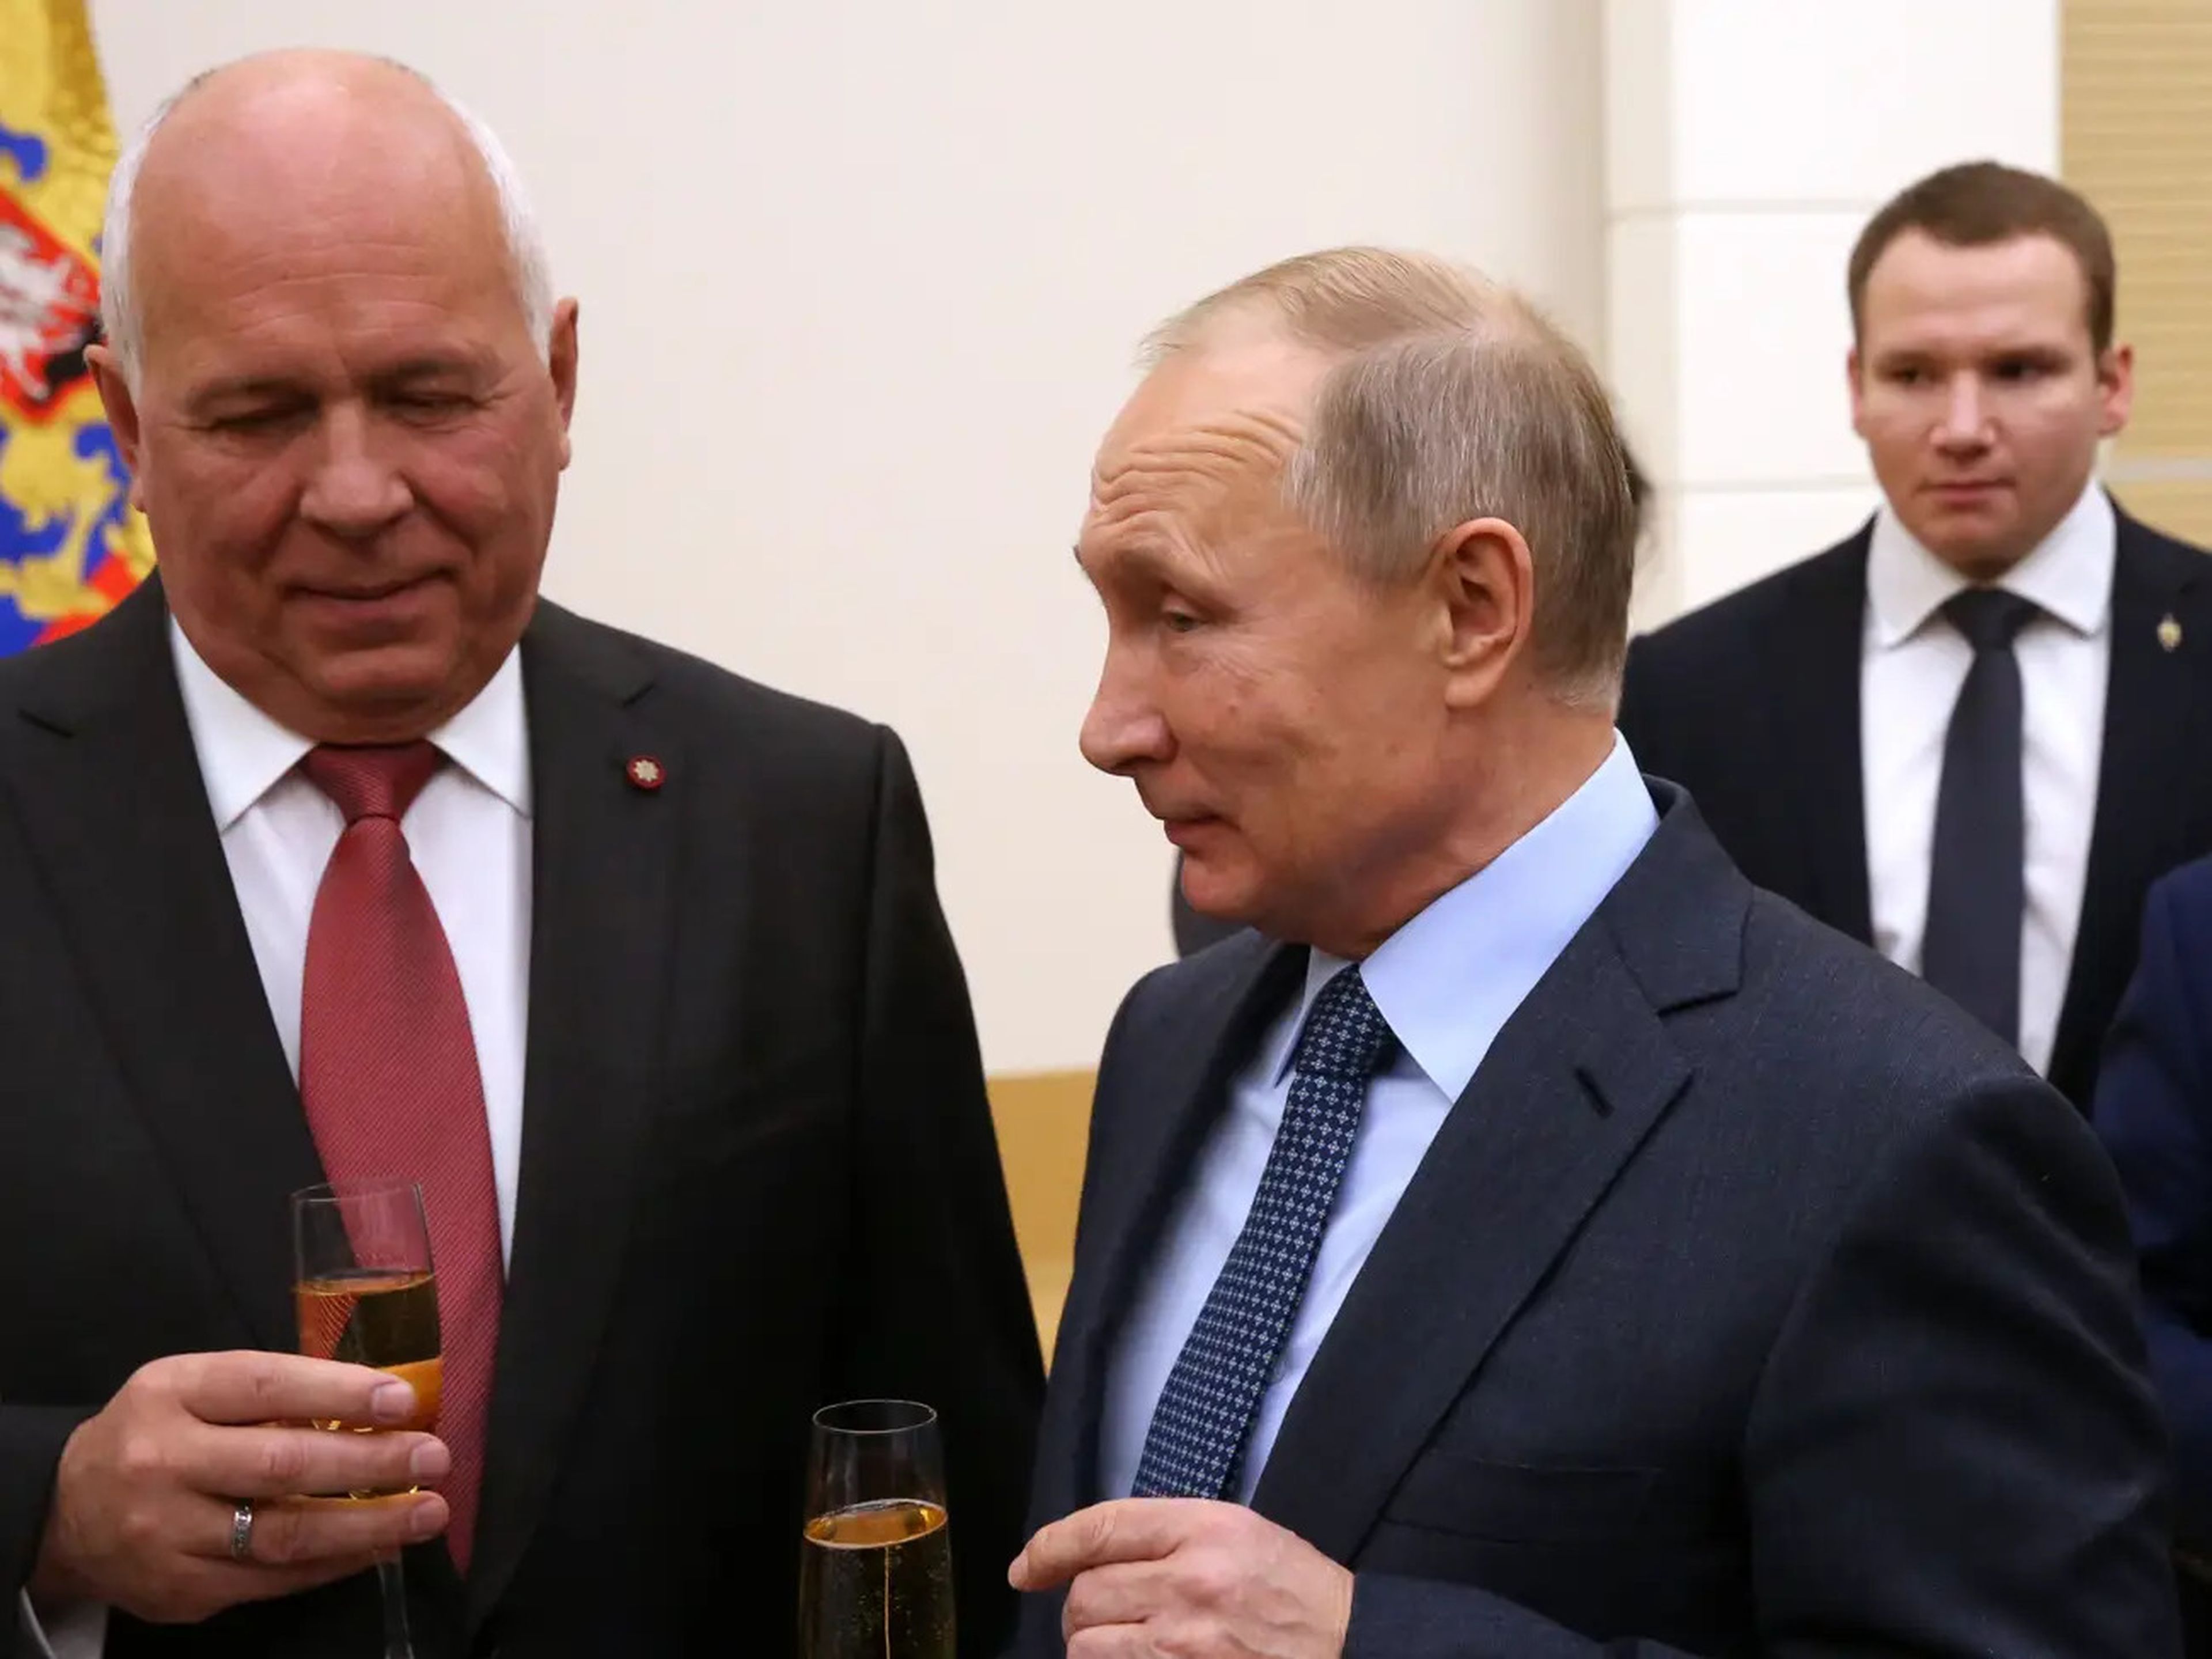 El director general de Rostec, Sergei Chemezov, a la izquierda, es un estrecho aliado del presidente ruso Vladimir Putin.